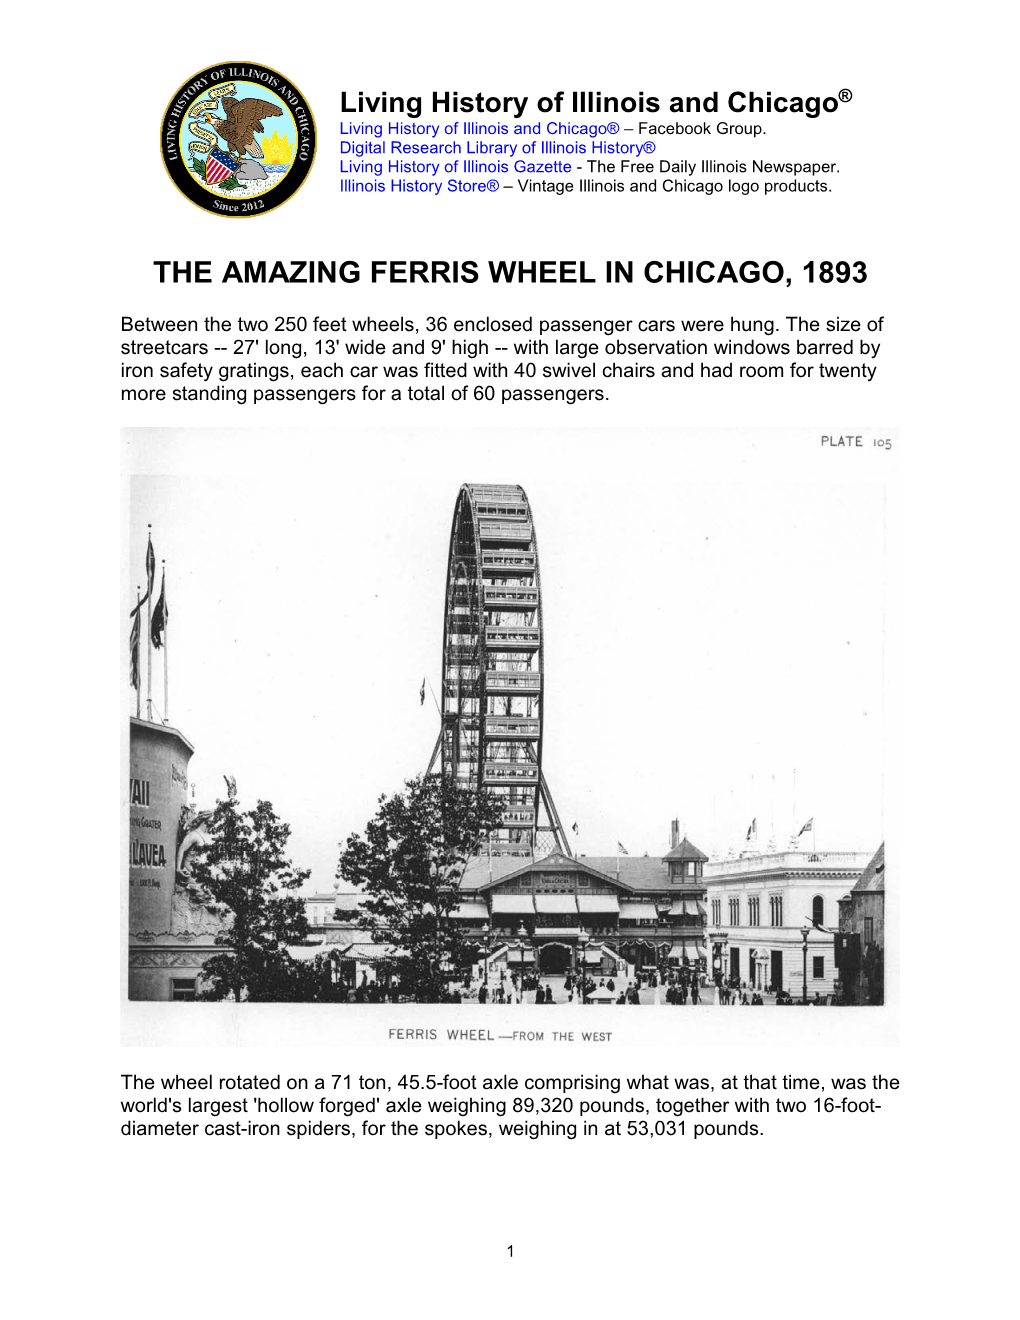 Amazing Ferris Wheel in Chicago, 1893